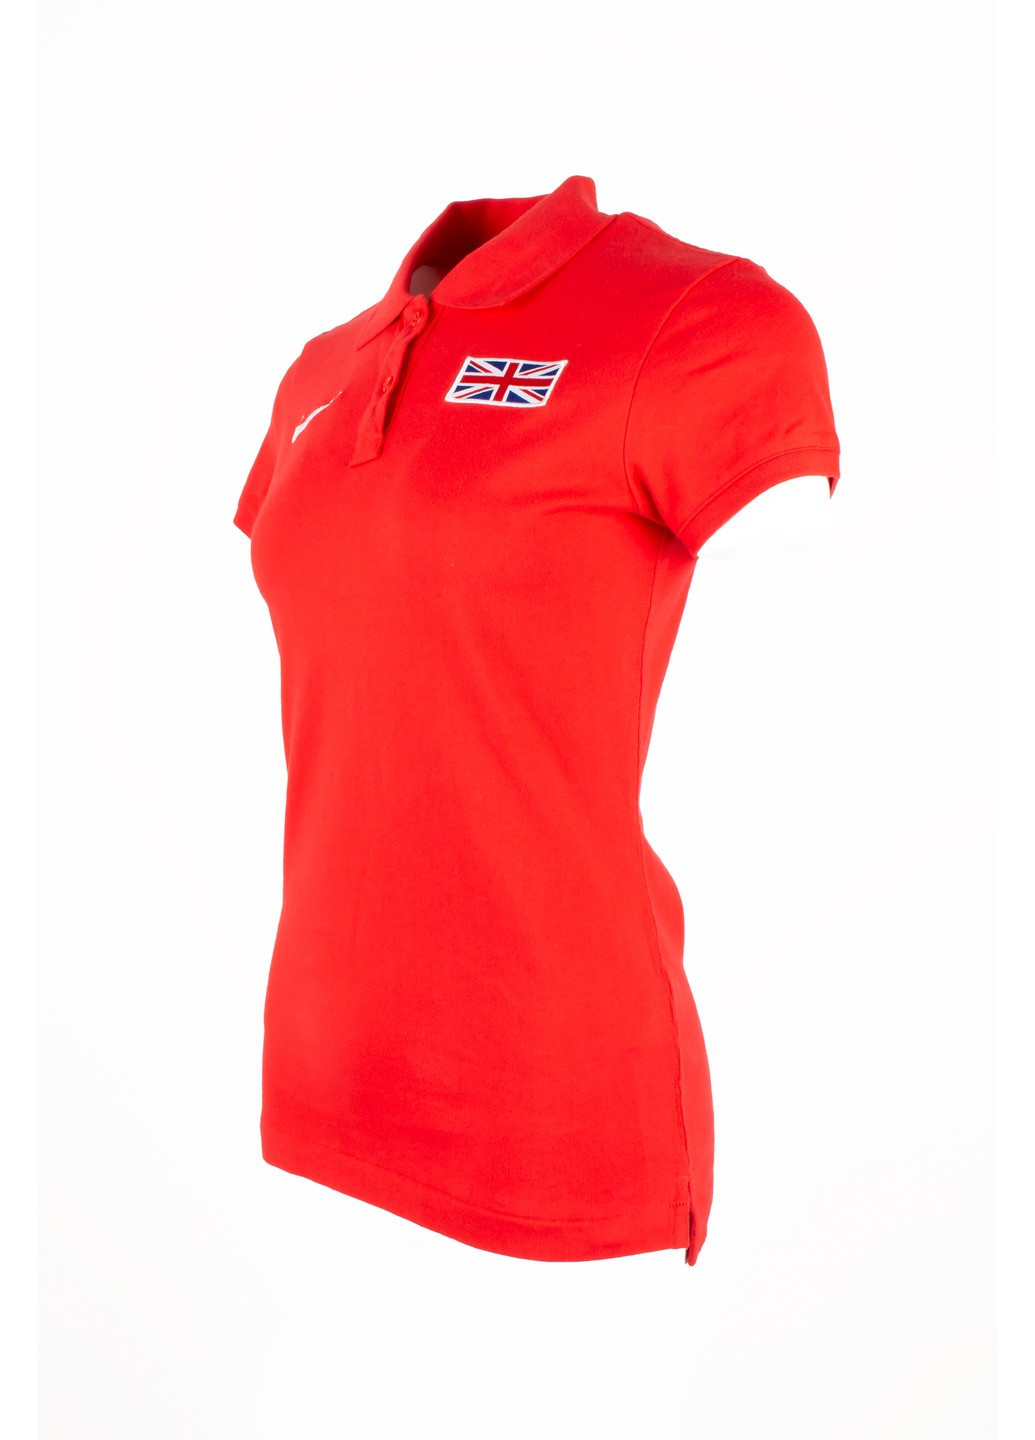 Красная летняя футболка женская polo 652585 Nike